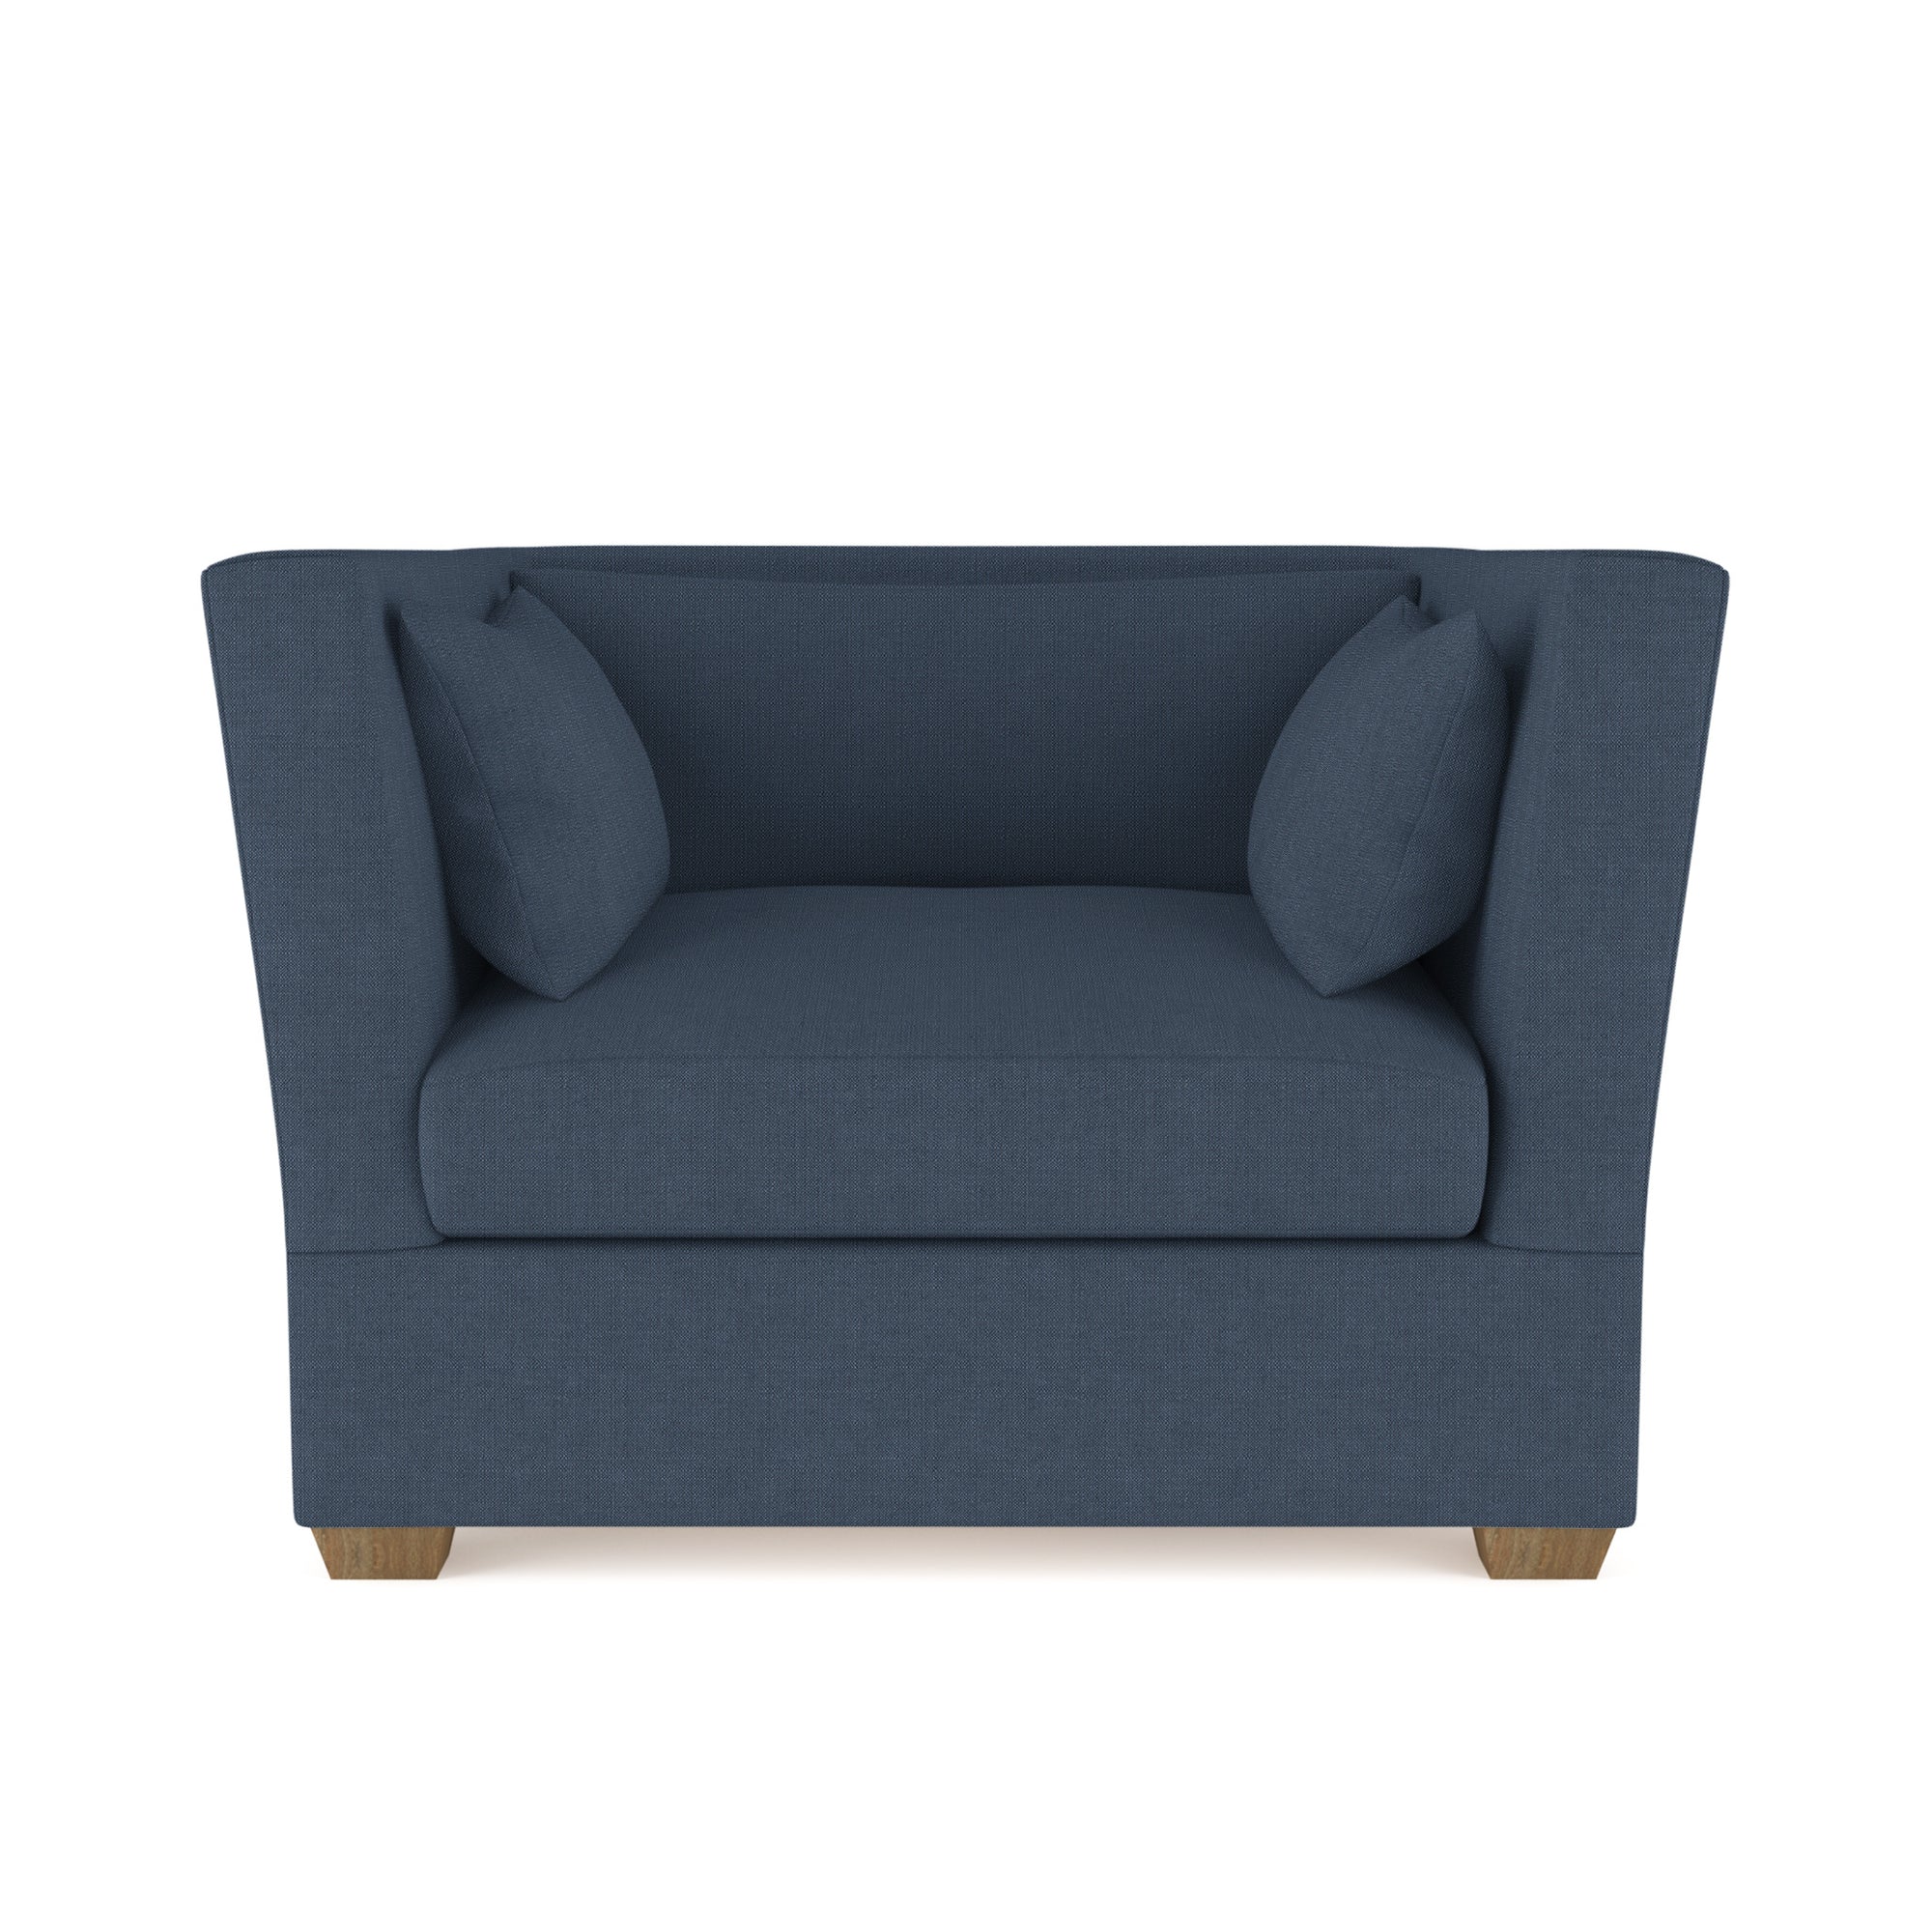 Rivington Chair - Bluebell Box Weave Linen